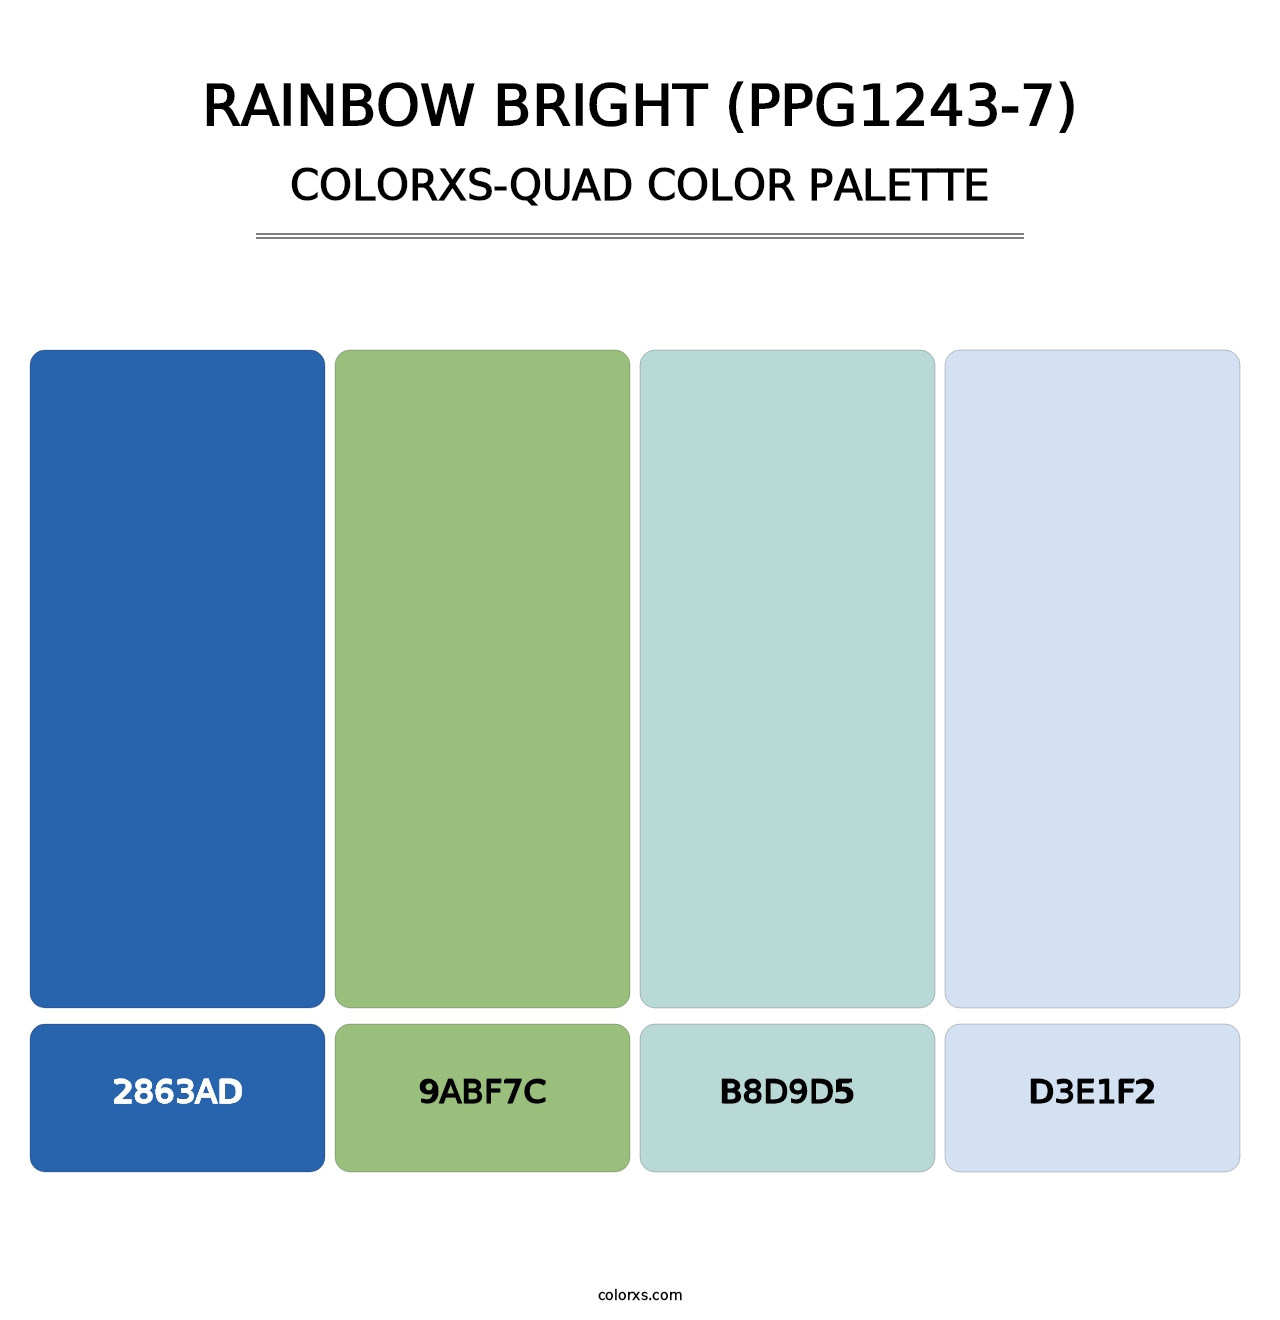 Rainbow Bright (PPG1243-7) - Colorxs Quad Palette